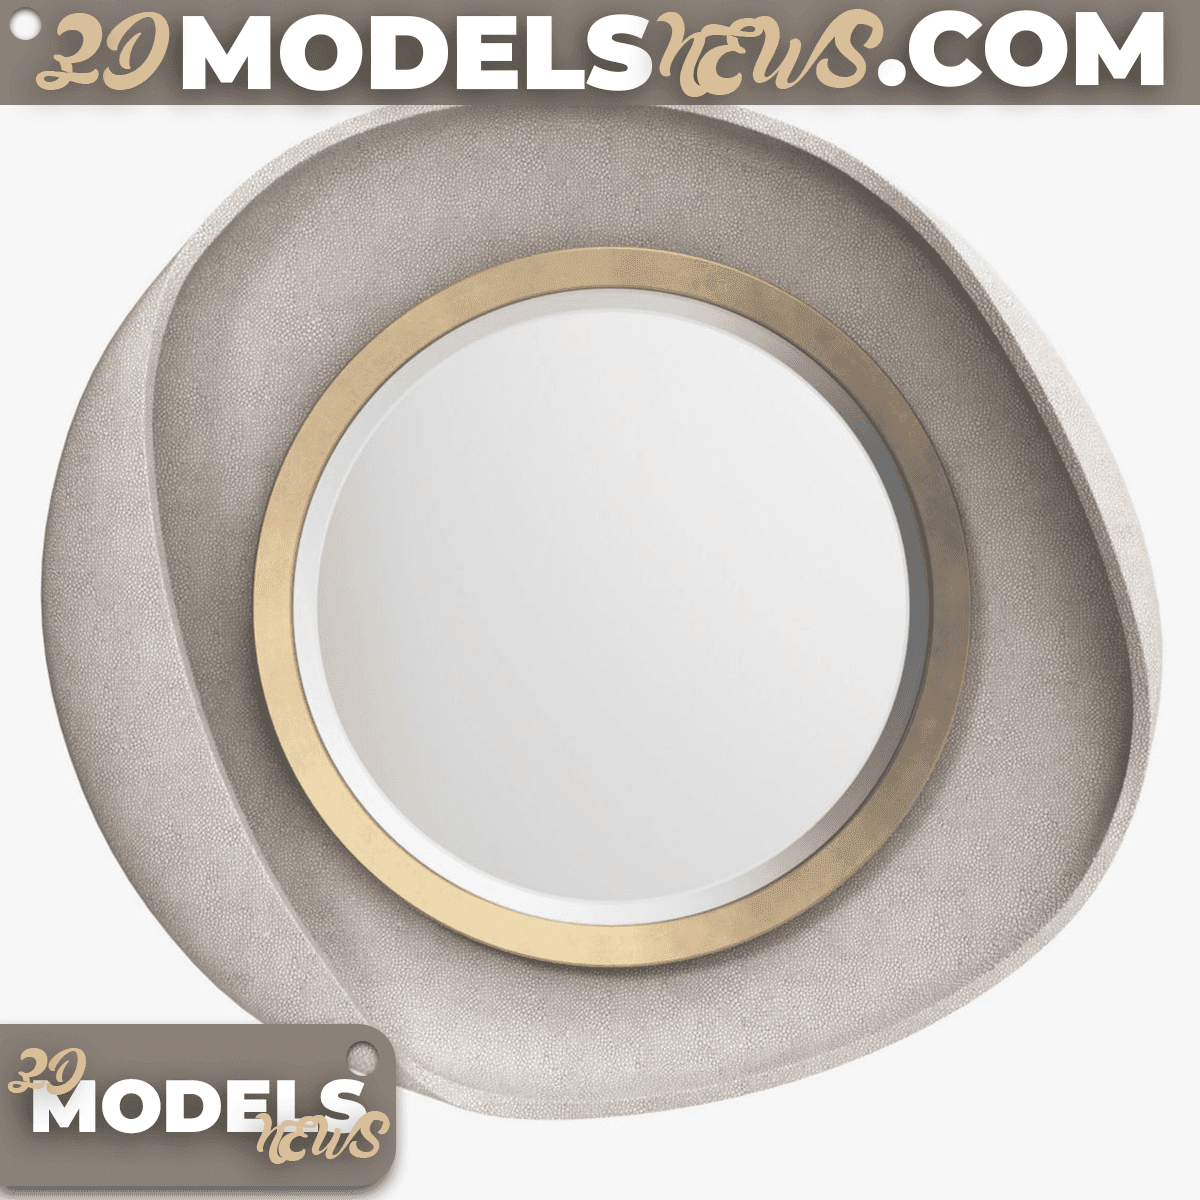 Petal mirror model in cream shagreen 1